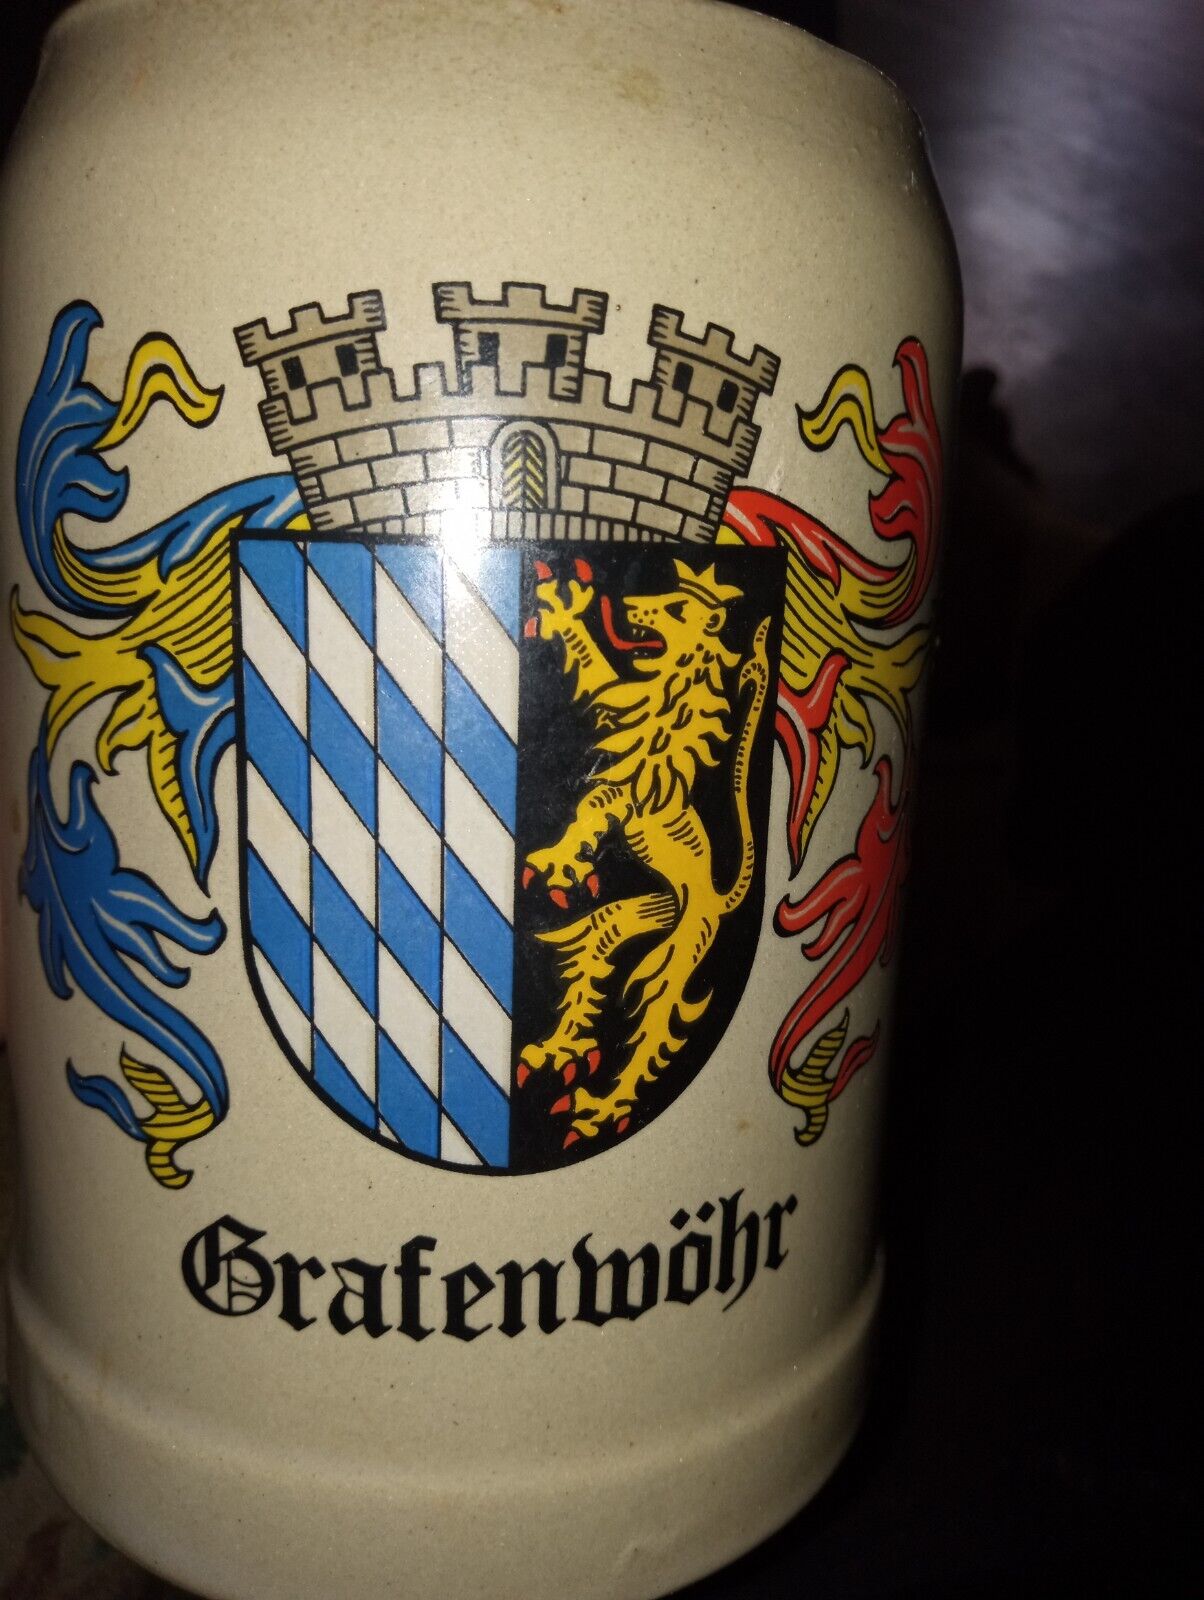 west germany grafenwohr beer mug 